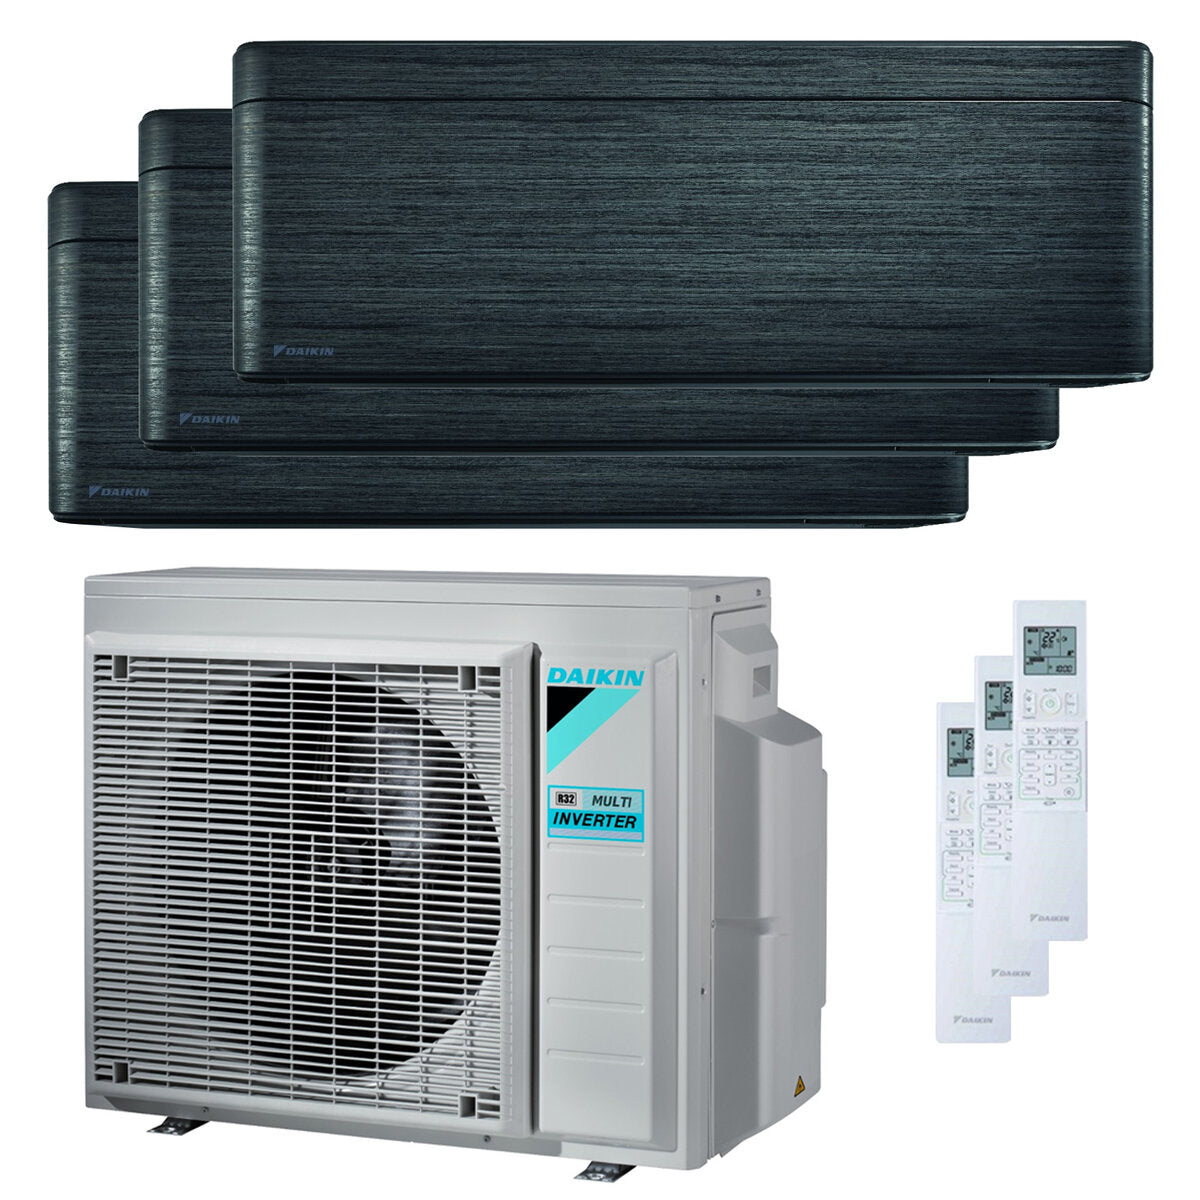 Daikin Stylish Trial Split Klimaanlage 7000 + 9000 + 18000 BTU Inverter A++ WLAN Außengerät 6,8 kW